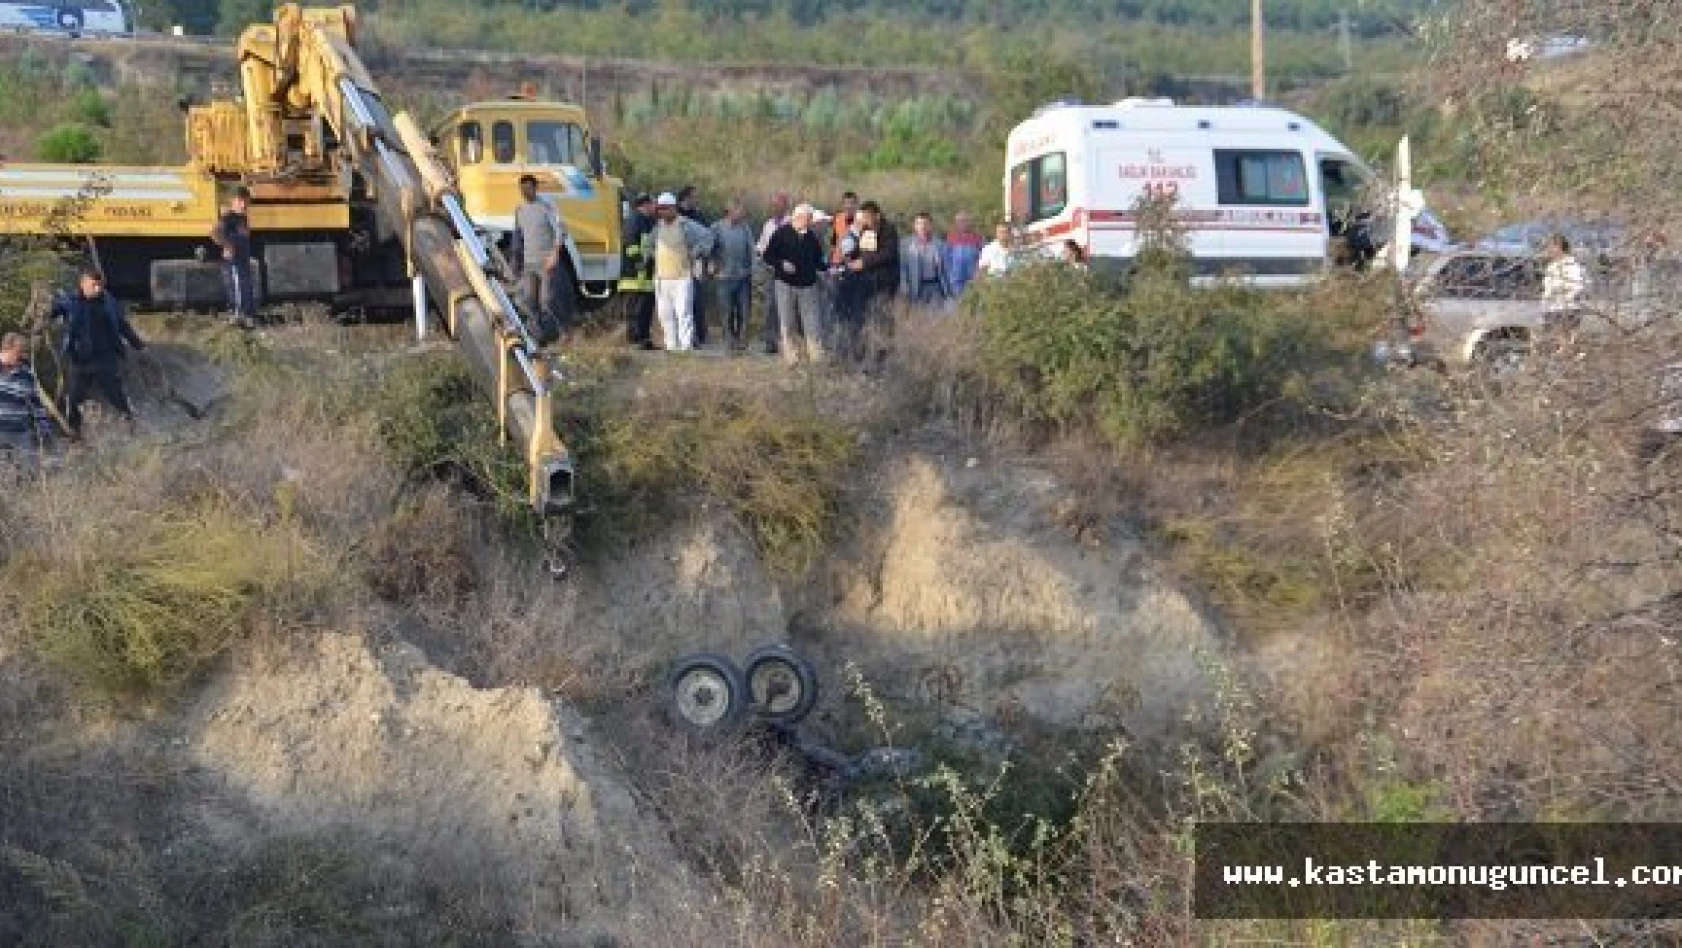 Kastamonu'da Traktör Kazası: 2 Ölü, 1 Yaralı